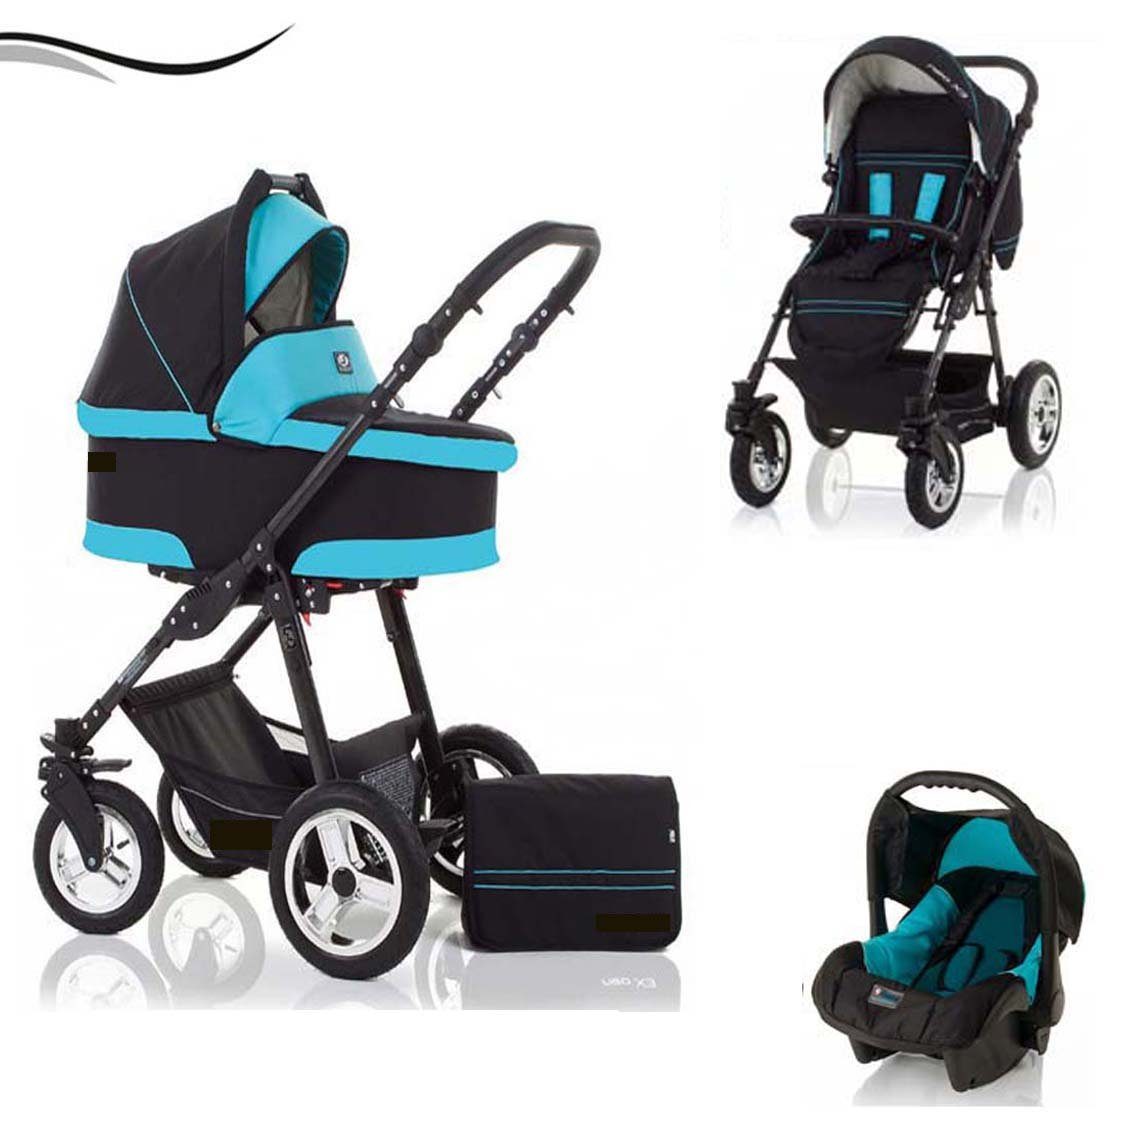 babies-on-wheels Kombi-Kinderwagen City Star 3 in 1 inkl. Autositz - 16 Teile - von Geburt bis 4 Jahre in 16 Farben Schwarz-Türkis